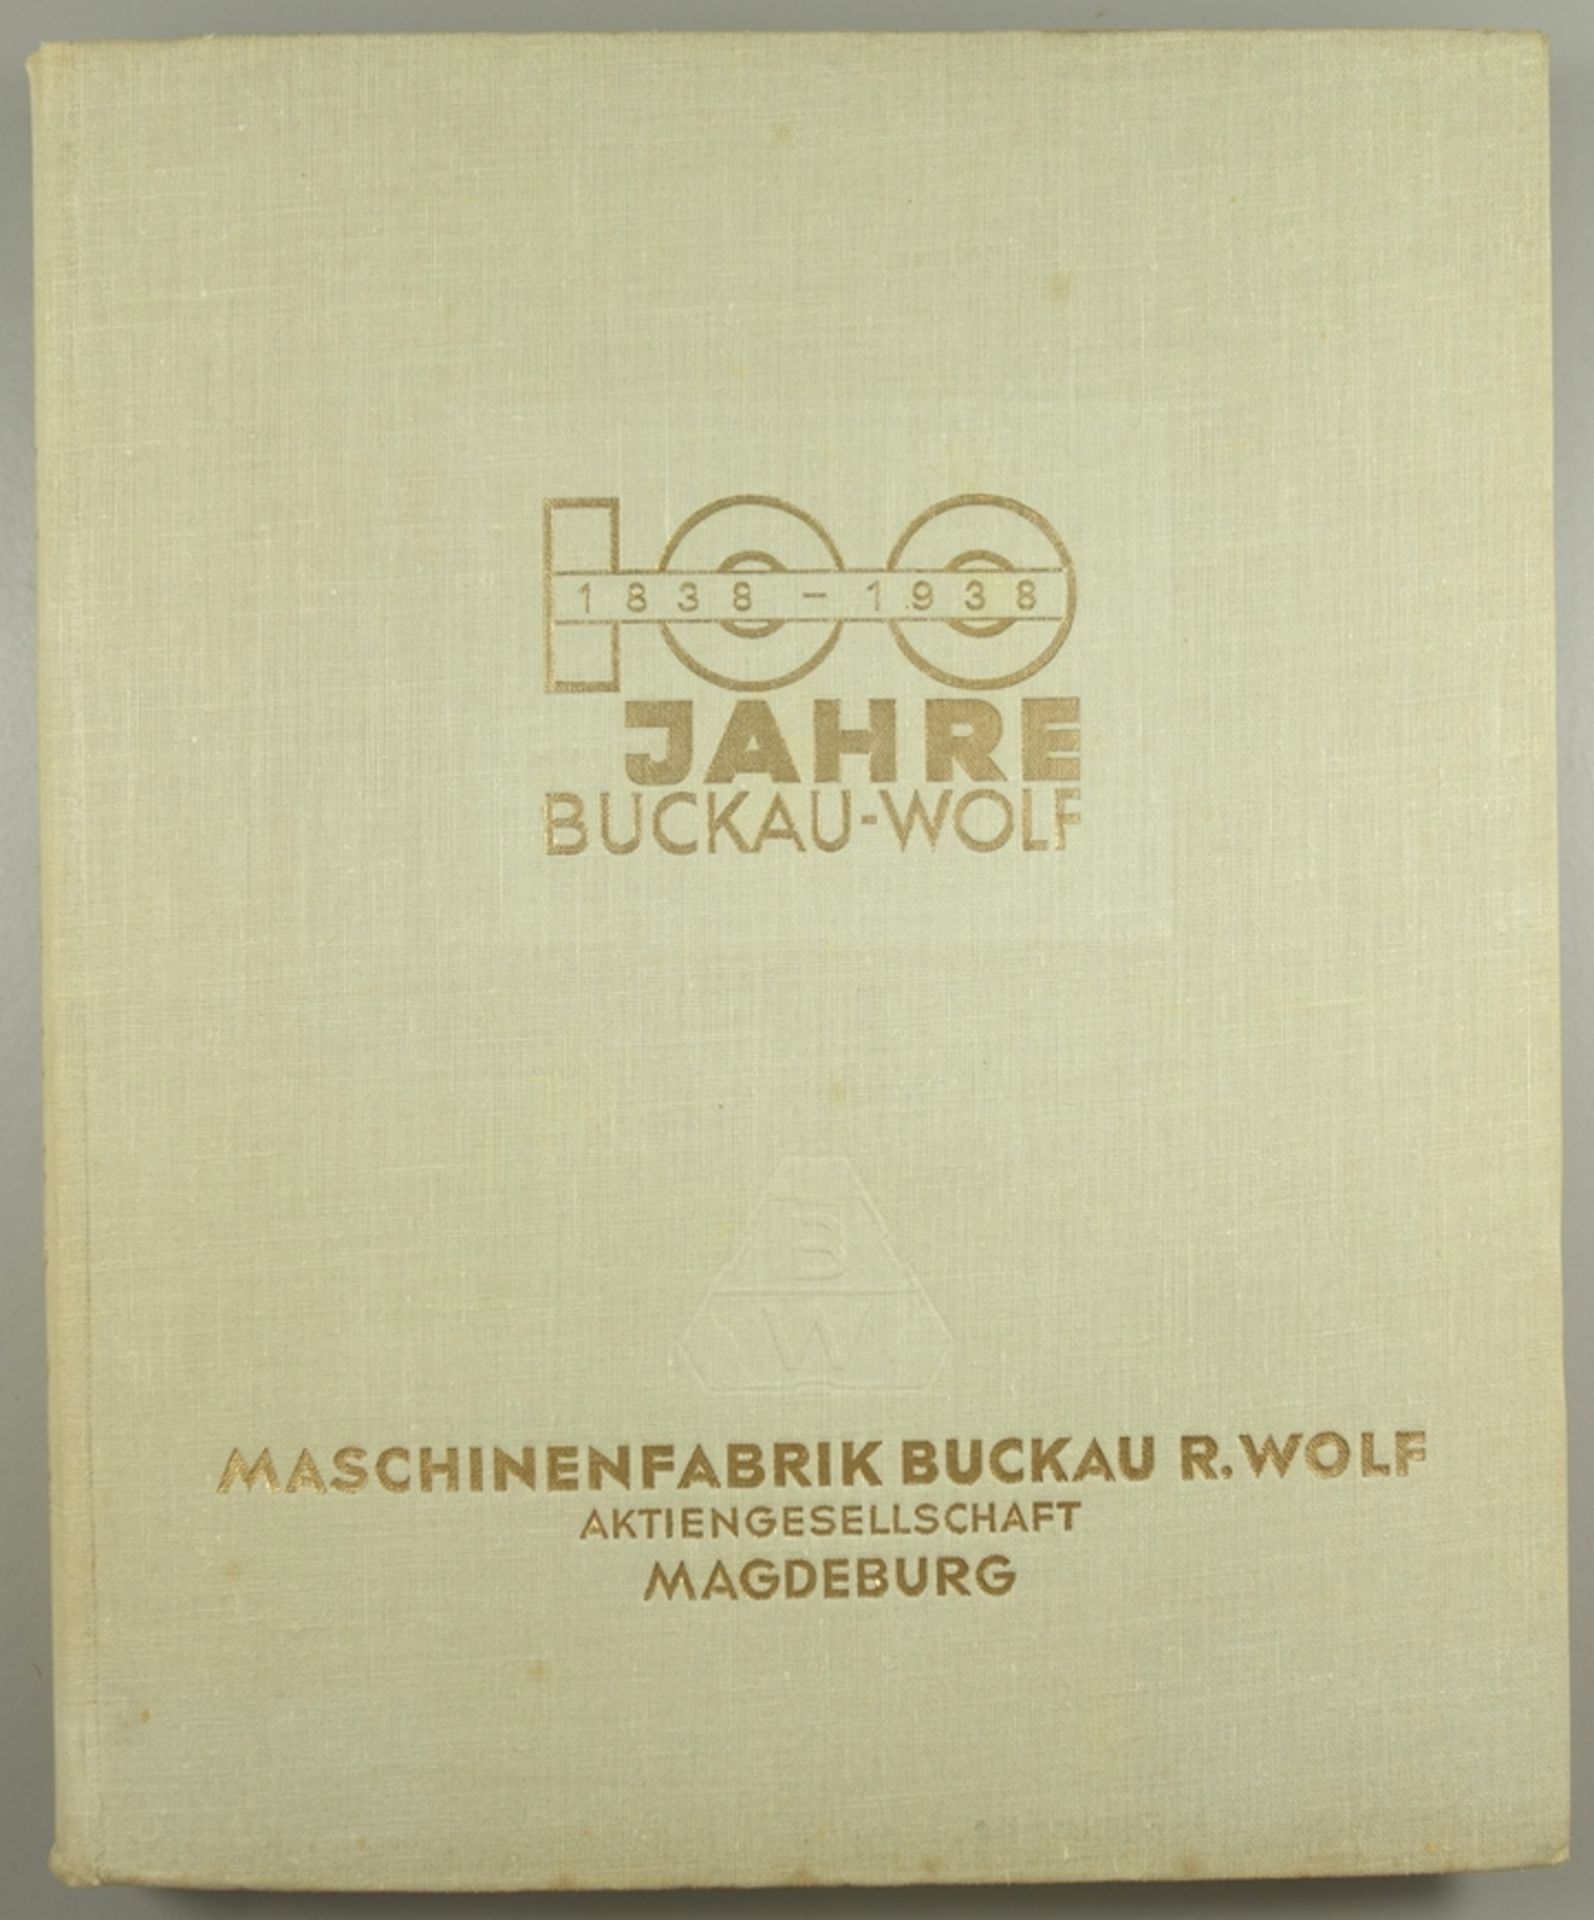 100 Jahre Buckau-Wolf 1838-1938, "Die Geschichte unseres Hauses" Maschinenfabrik Buckau R.Wolf,